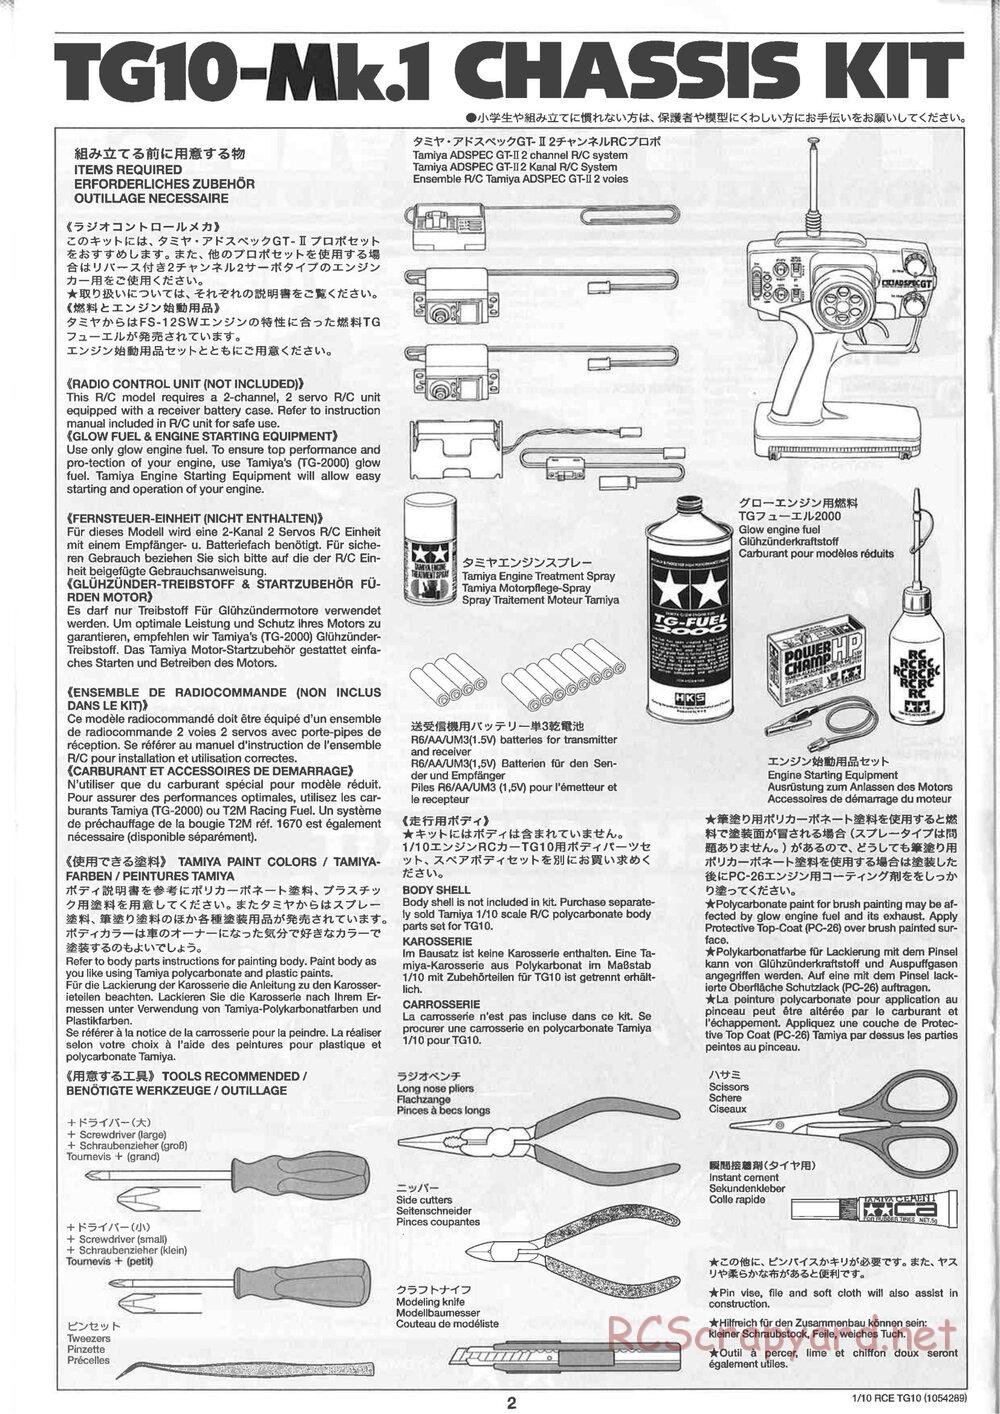 Tamiya - TG10 Mk.1 Chassis - Manual - Page 2